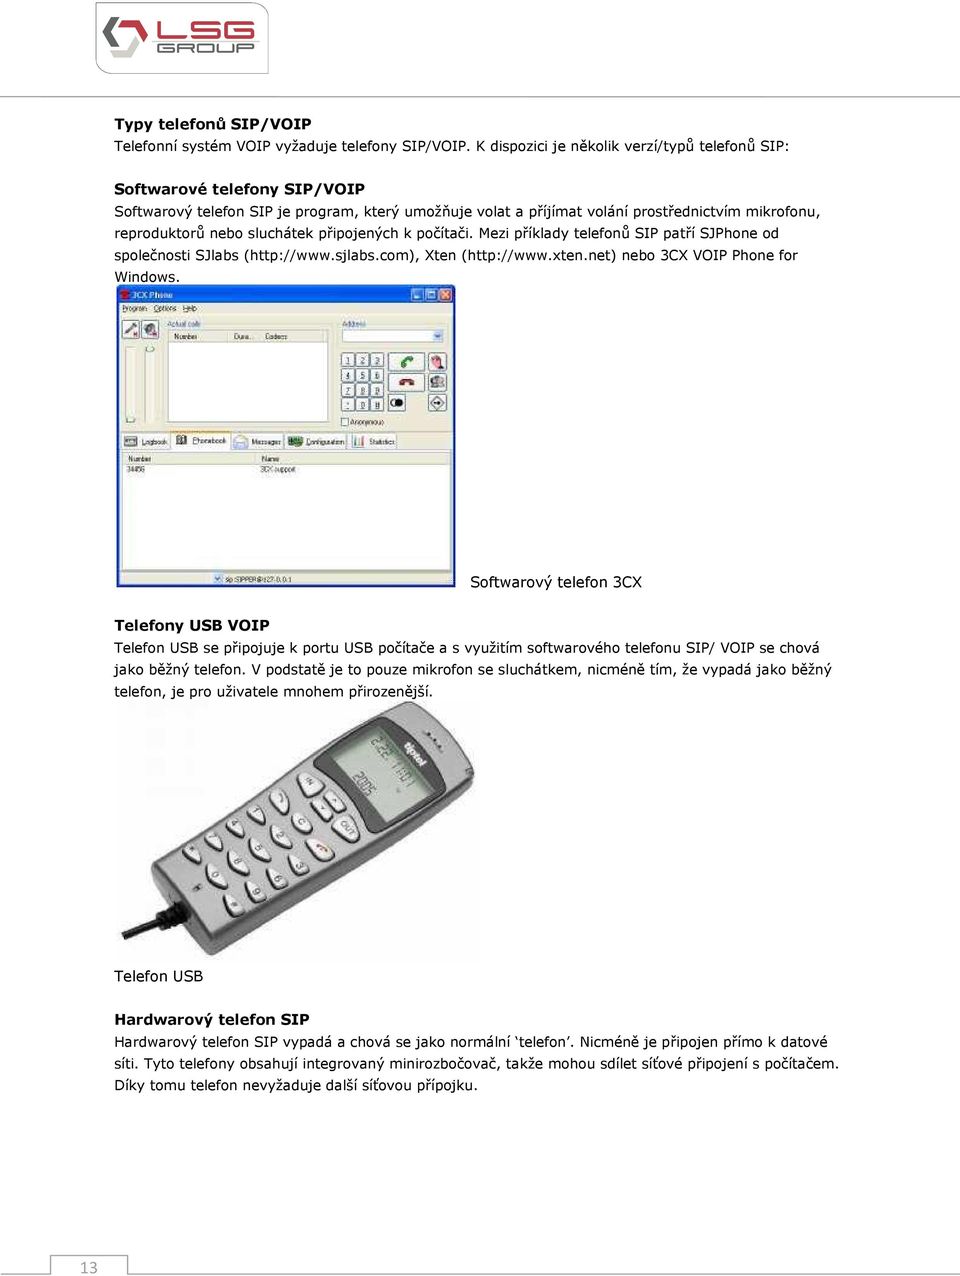 sluchátek připojených k počítači. Mezi příklady telefonů SIP patří SJPhone od společnosti SJlabs (http://www.sjlabs.com), Xten (http://www.xten.net) nebo 3CX VOIP Phone for Windows.